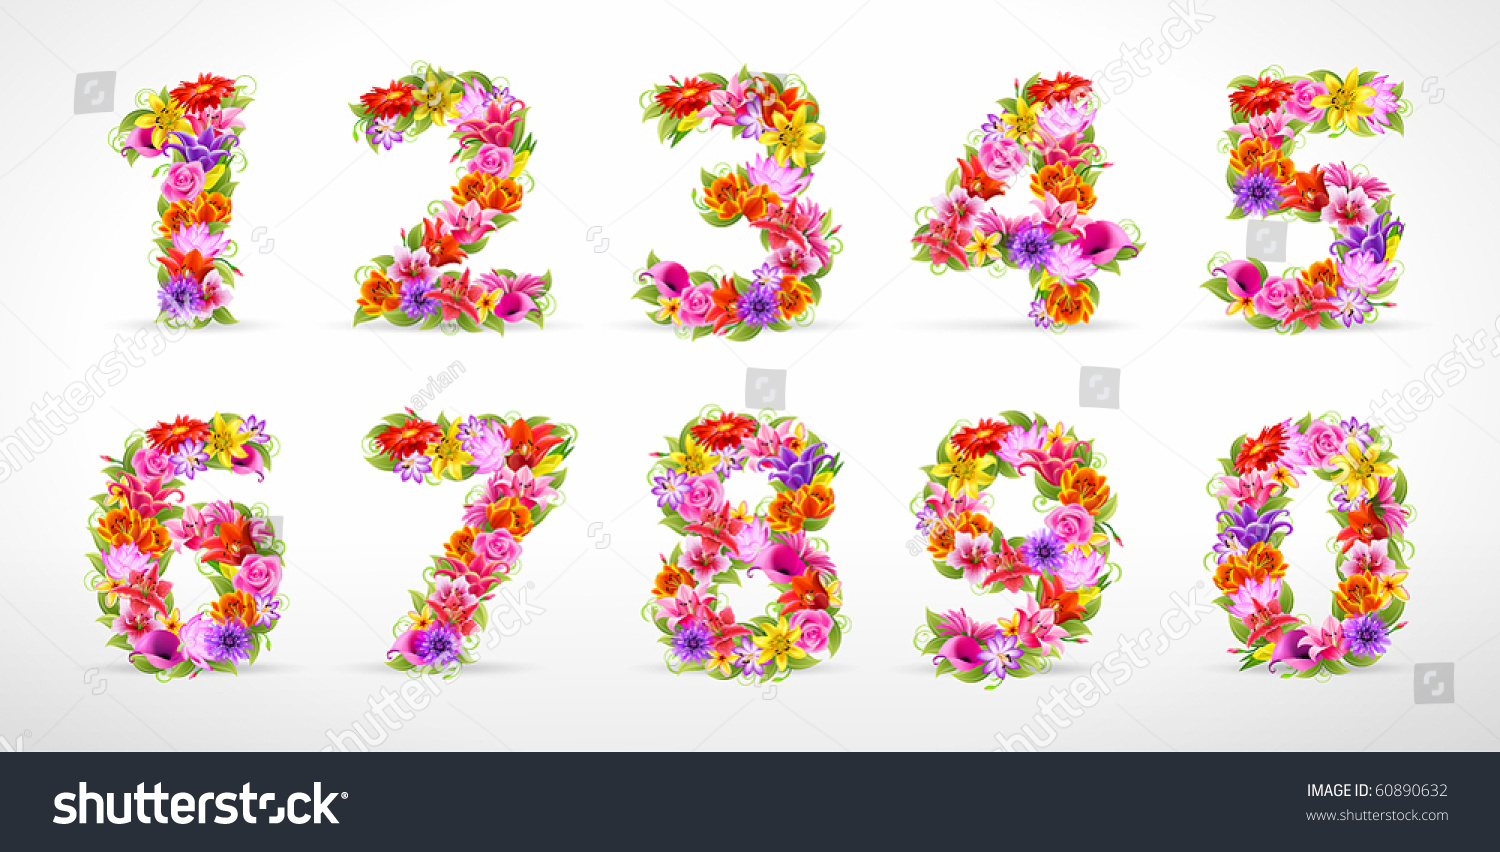 1 10 мая 21. Красивые цифры. Красивые цветочные цифры. Красивые цифры с цветами. Цветочные цифры на прозрачном фоне.